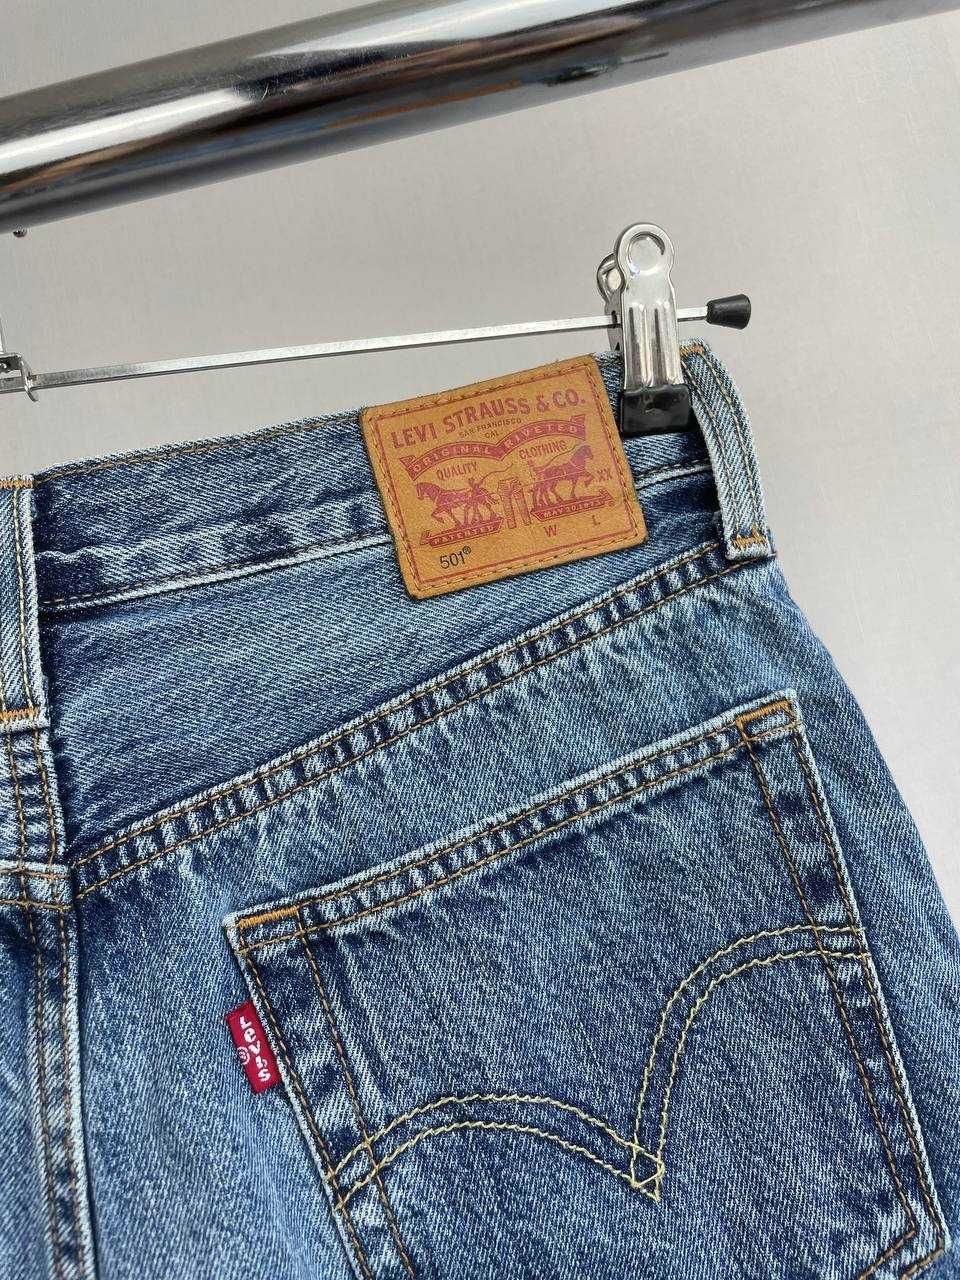 27/С Жіночі джинсові шорти Levi’s premium 501 джинсовые шорты оригинал